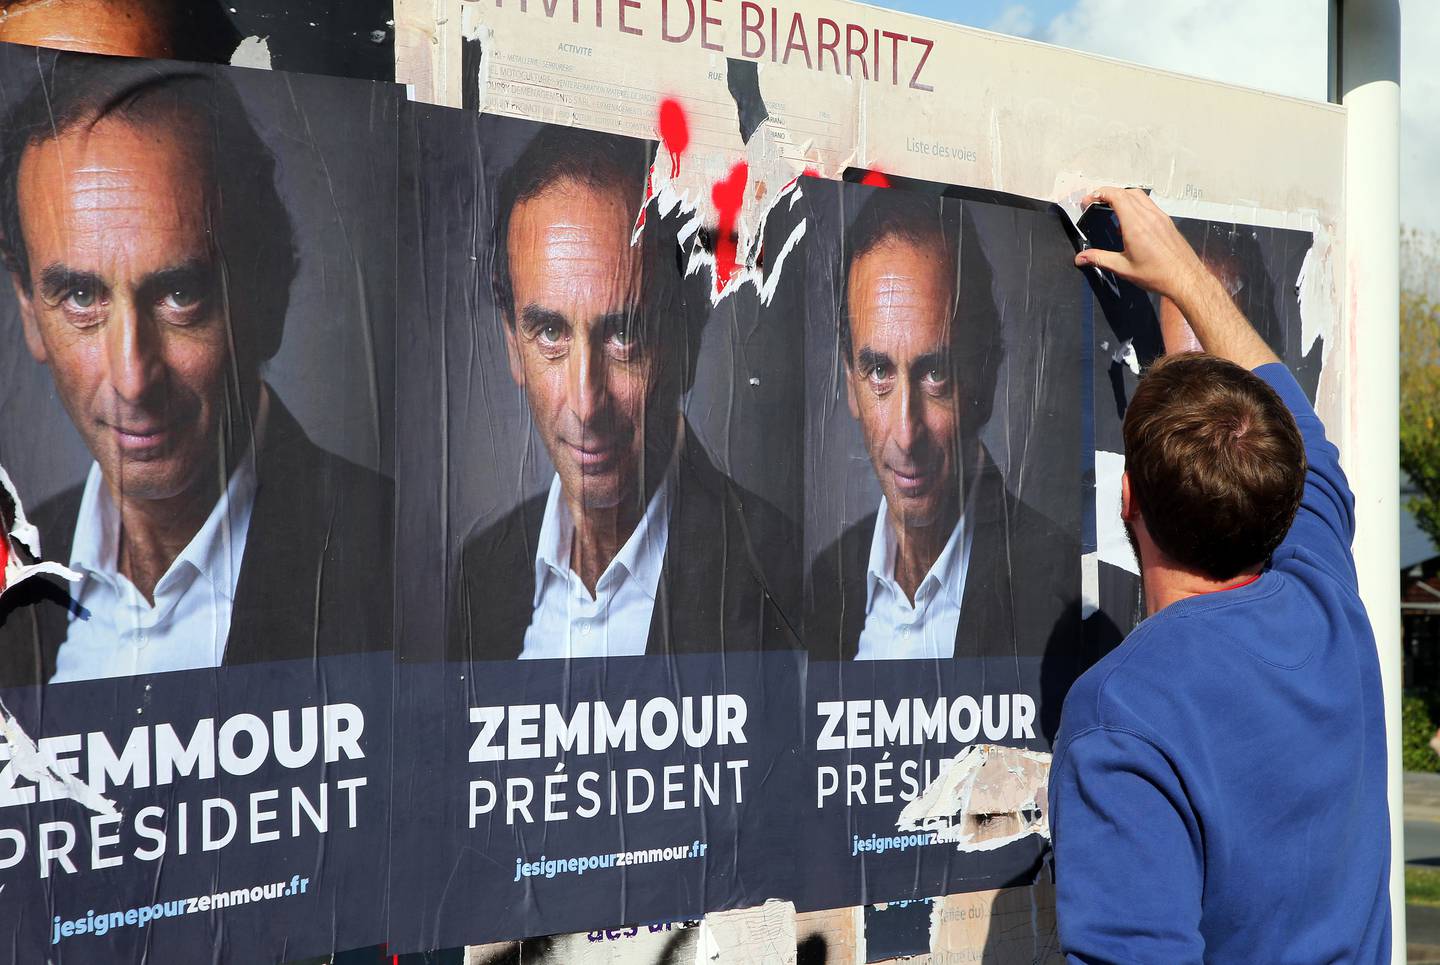 En mann river ned en plakat med bilde av Zemmour. 63-åringen har ennå ikke sagt om han stiller i neste års presidentvalg, men det er likevel hengt opp flere plakater med påskriften "Zemmour president".